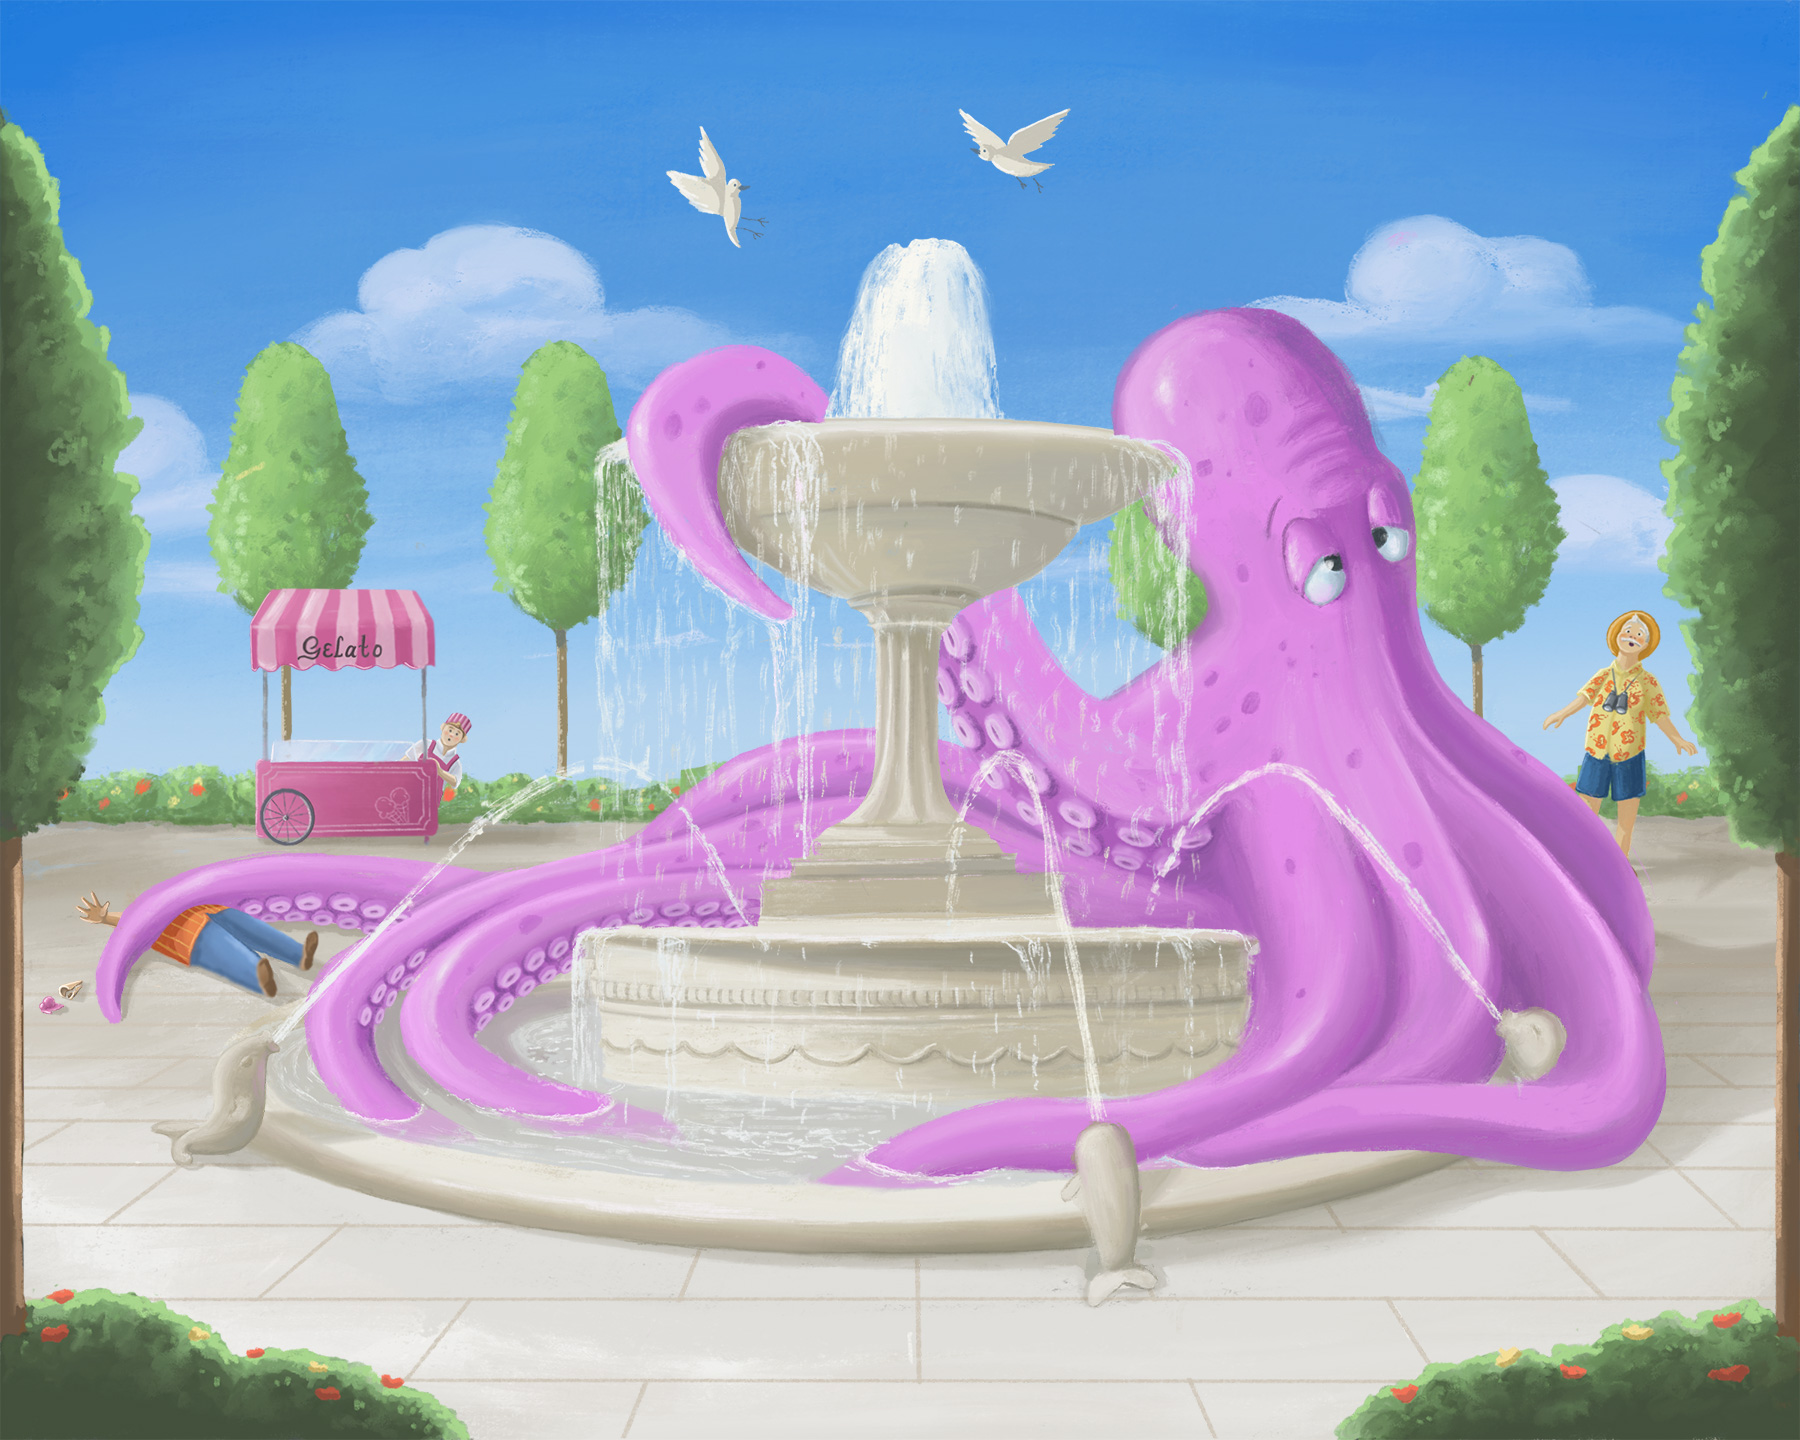 Octopus_Wip.jpg